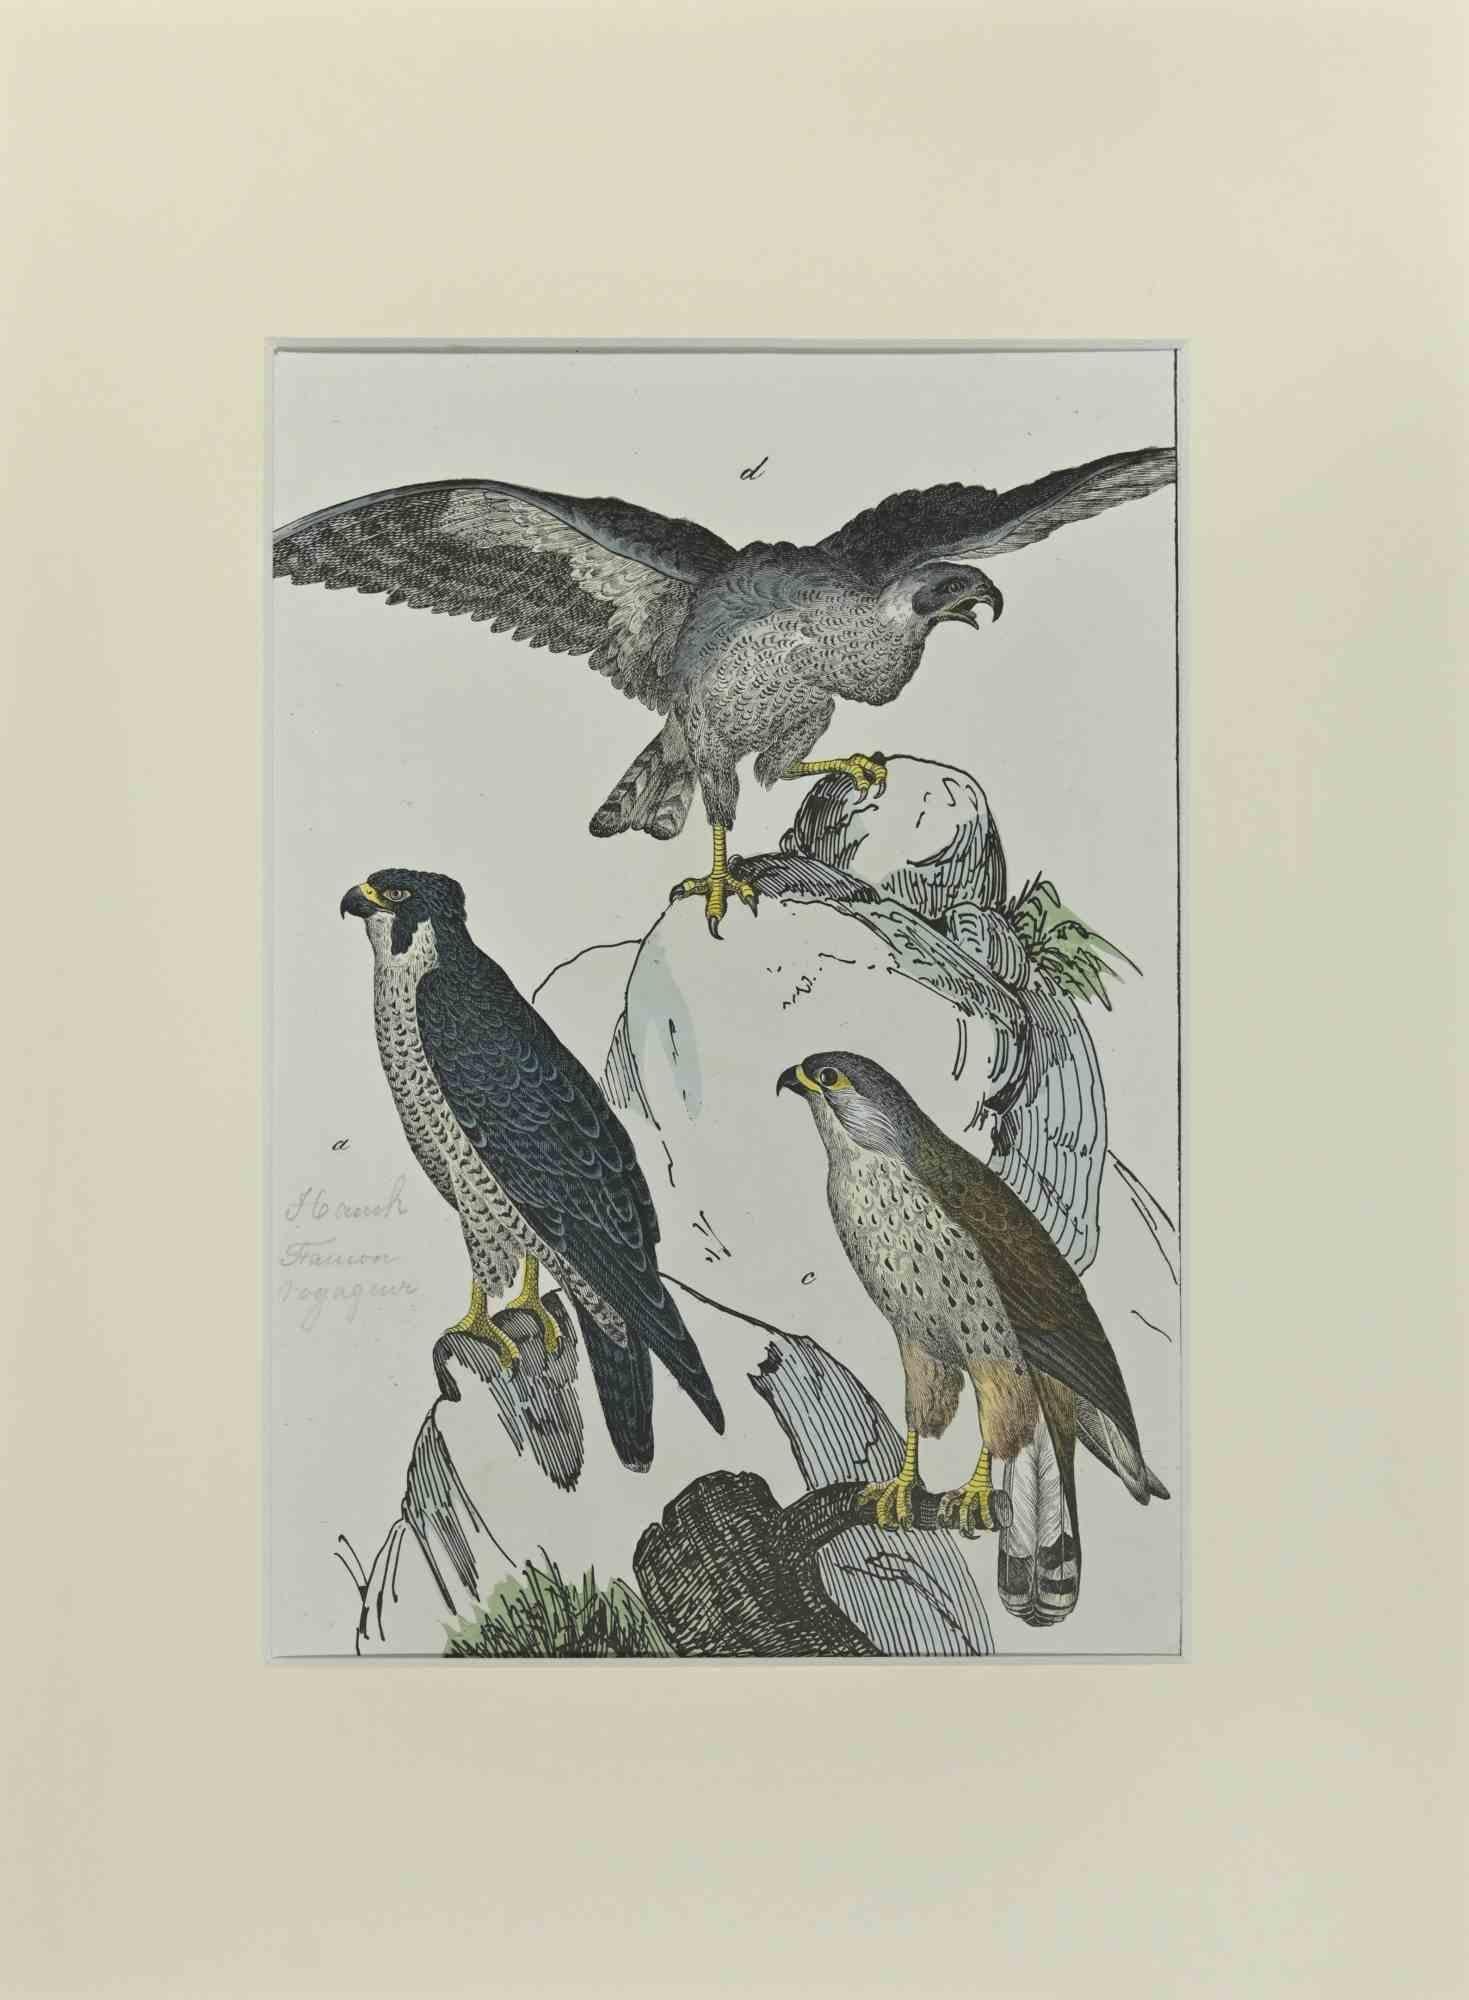 Falcons est une gravure à l'eau-forte réalisée à la main par Gotthilf Heinrich von Schubert - Johann Friedrich Naumann, Illustration tirée de Natural history of birds in pictures, publiée par Stuttgart et Esslingen, Schreiber et Schill 1840 ca.